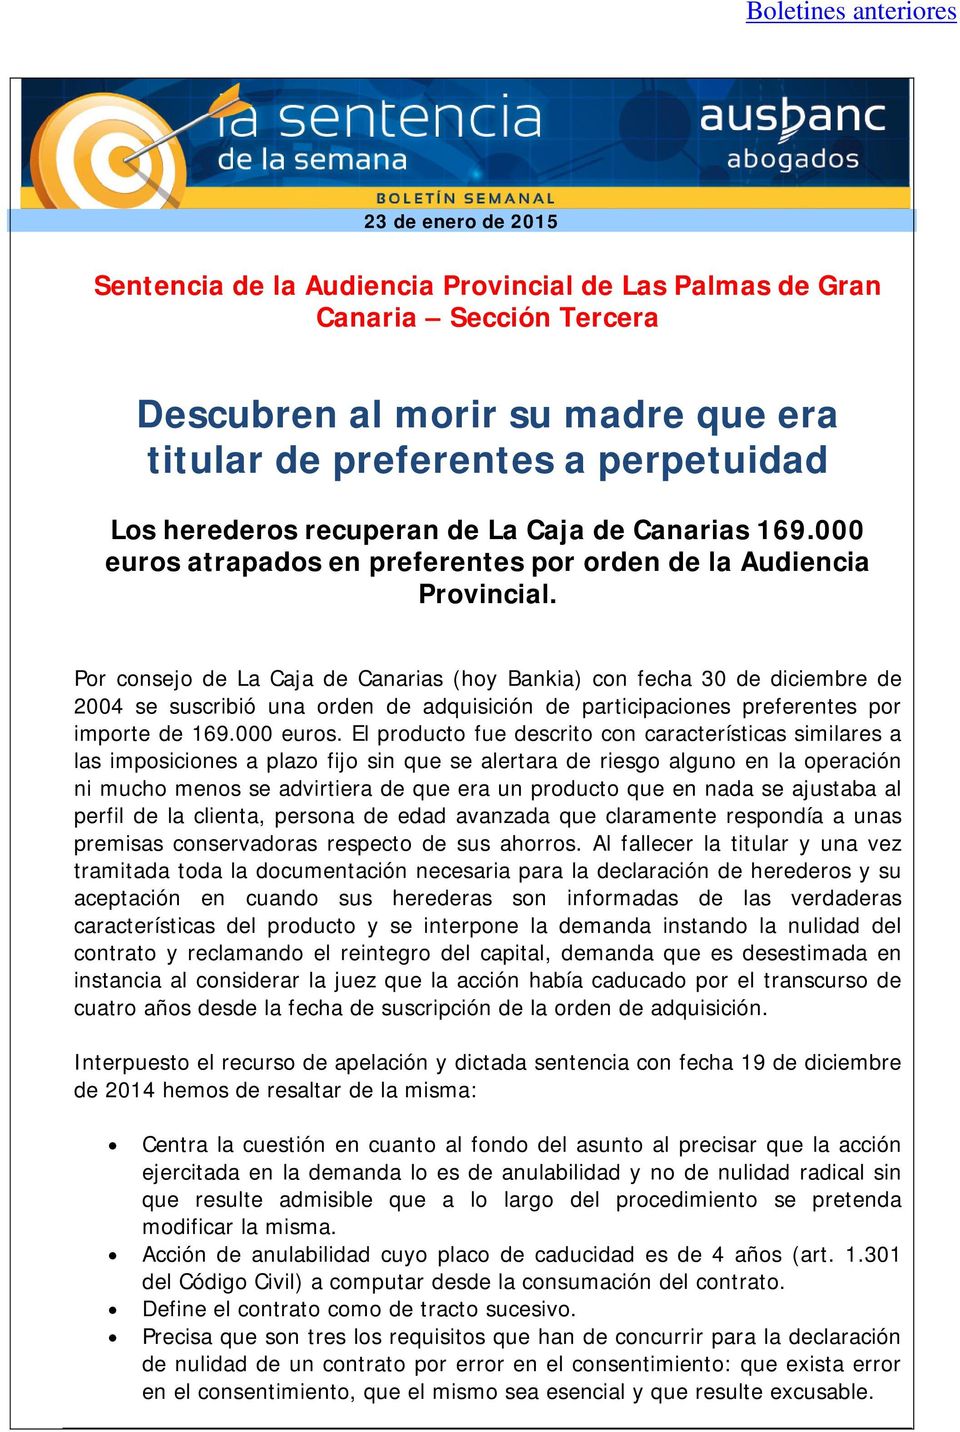 Por consejo de La Caja de Canarias (hoy Bankia) con fecha 30 de diciembre de 2004 se suscribió una orden de adquisición de participaciones preferentes por importe de 169.000 euros.